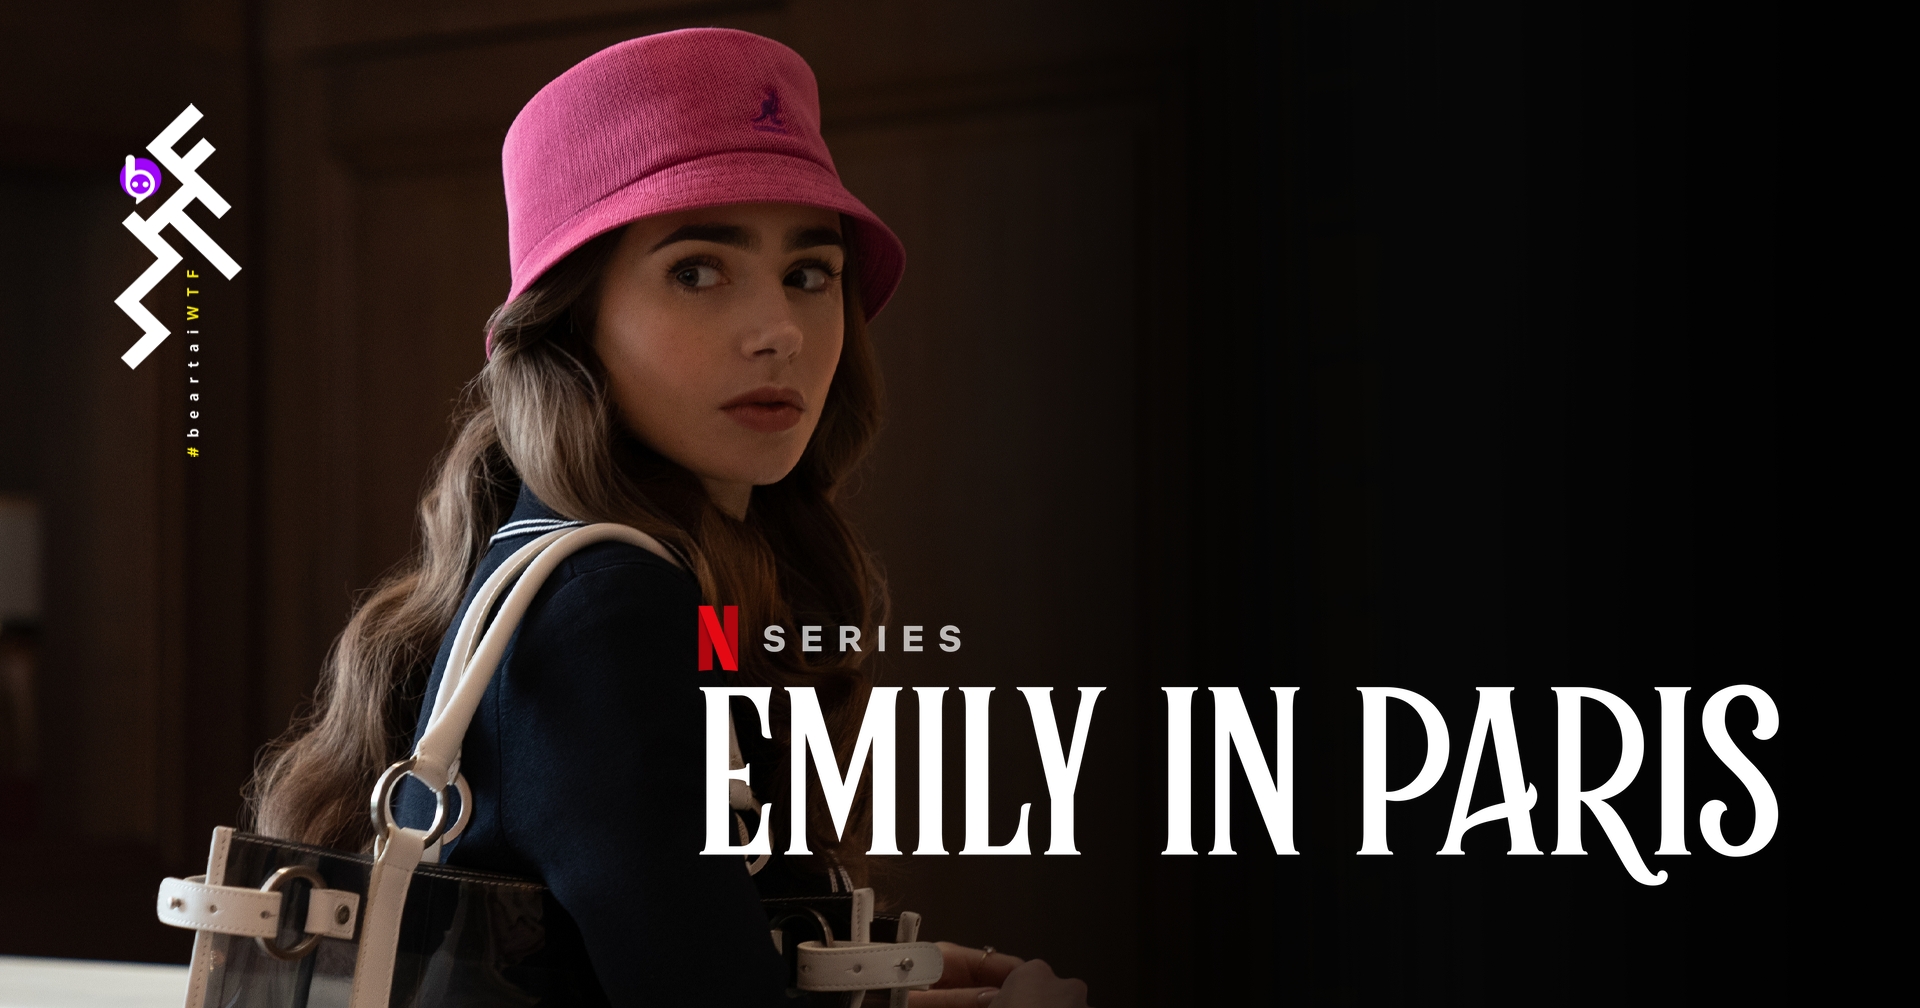 [รีวิวซีรีส์] Emily in Paris : น่ารักดูเพลิน แบบสาวน้อยอเมริกันสไตล์อินปารีส